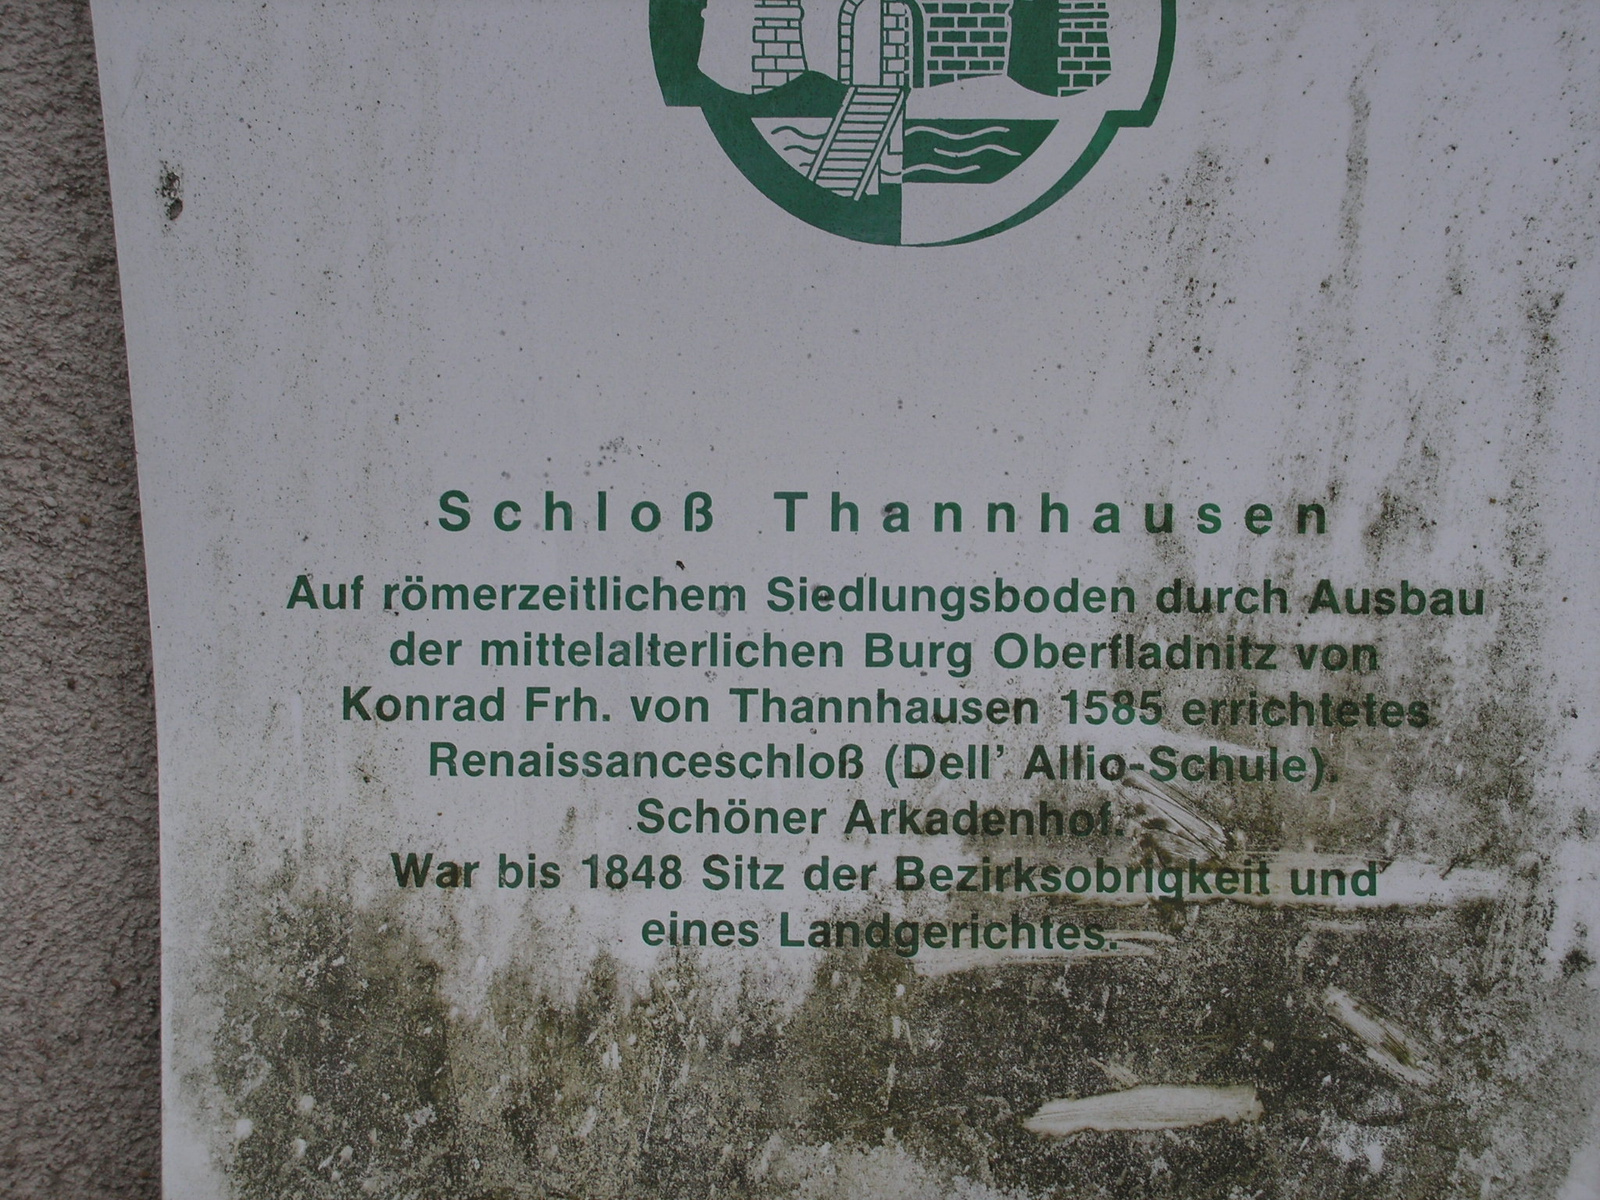 Oberfladnitz/Thannhausen, Schloß Thannhausen, SzG3